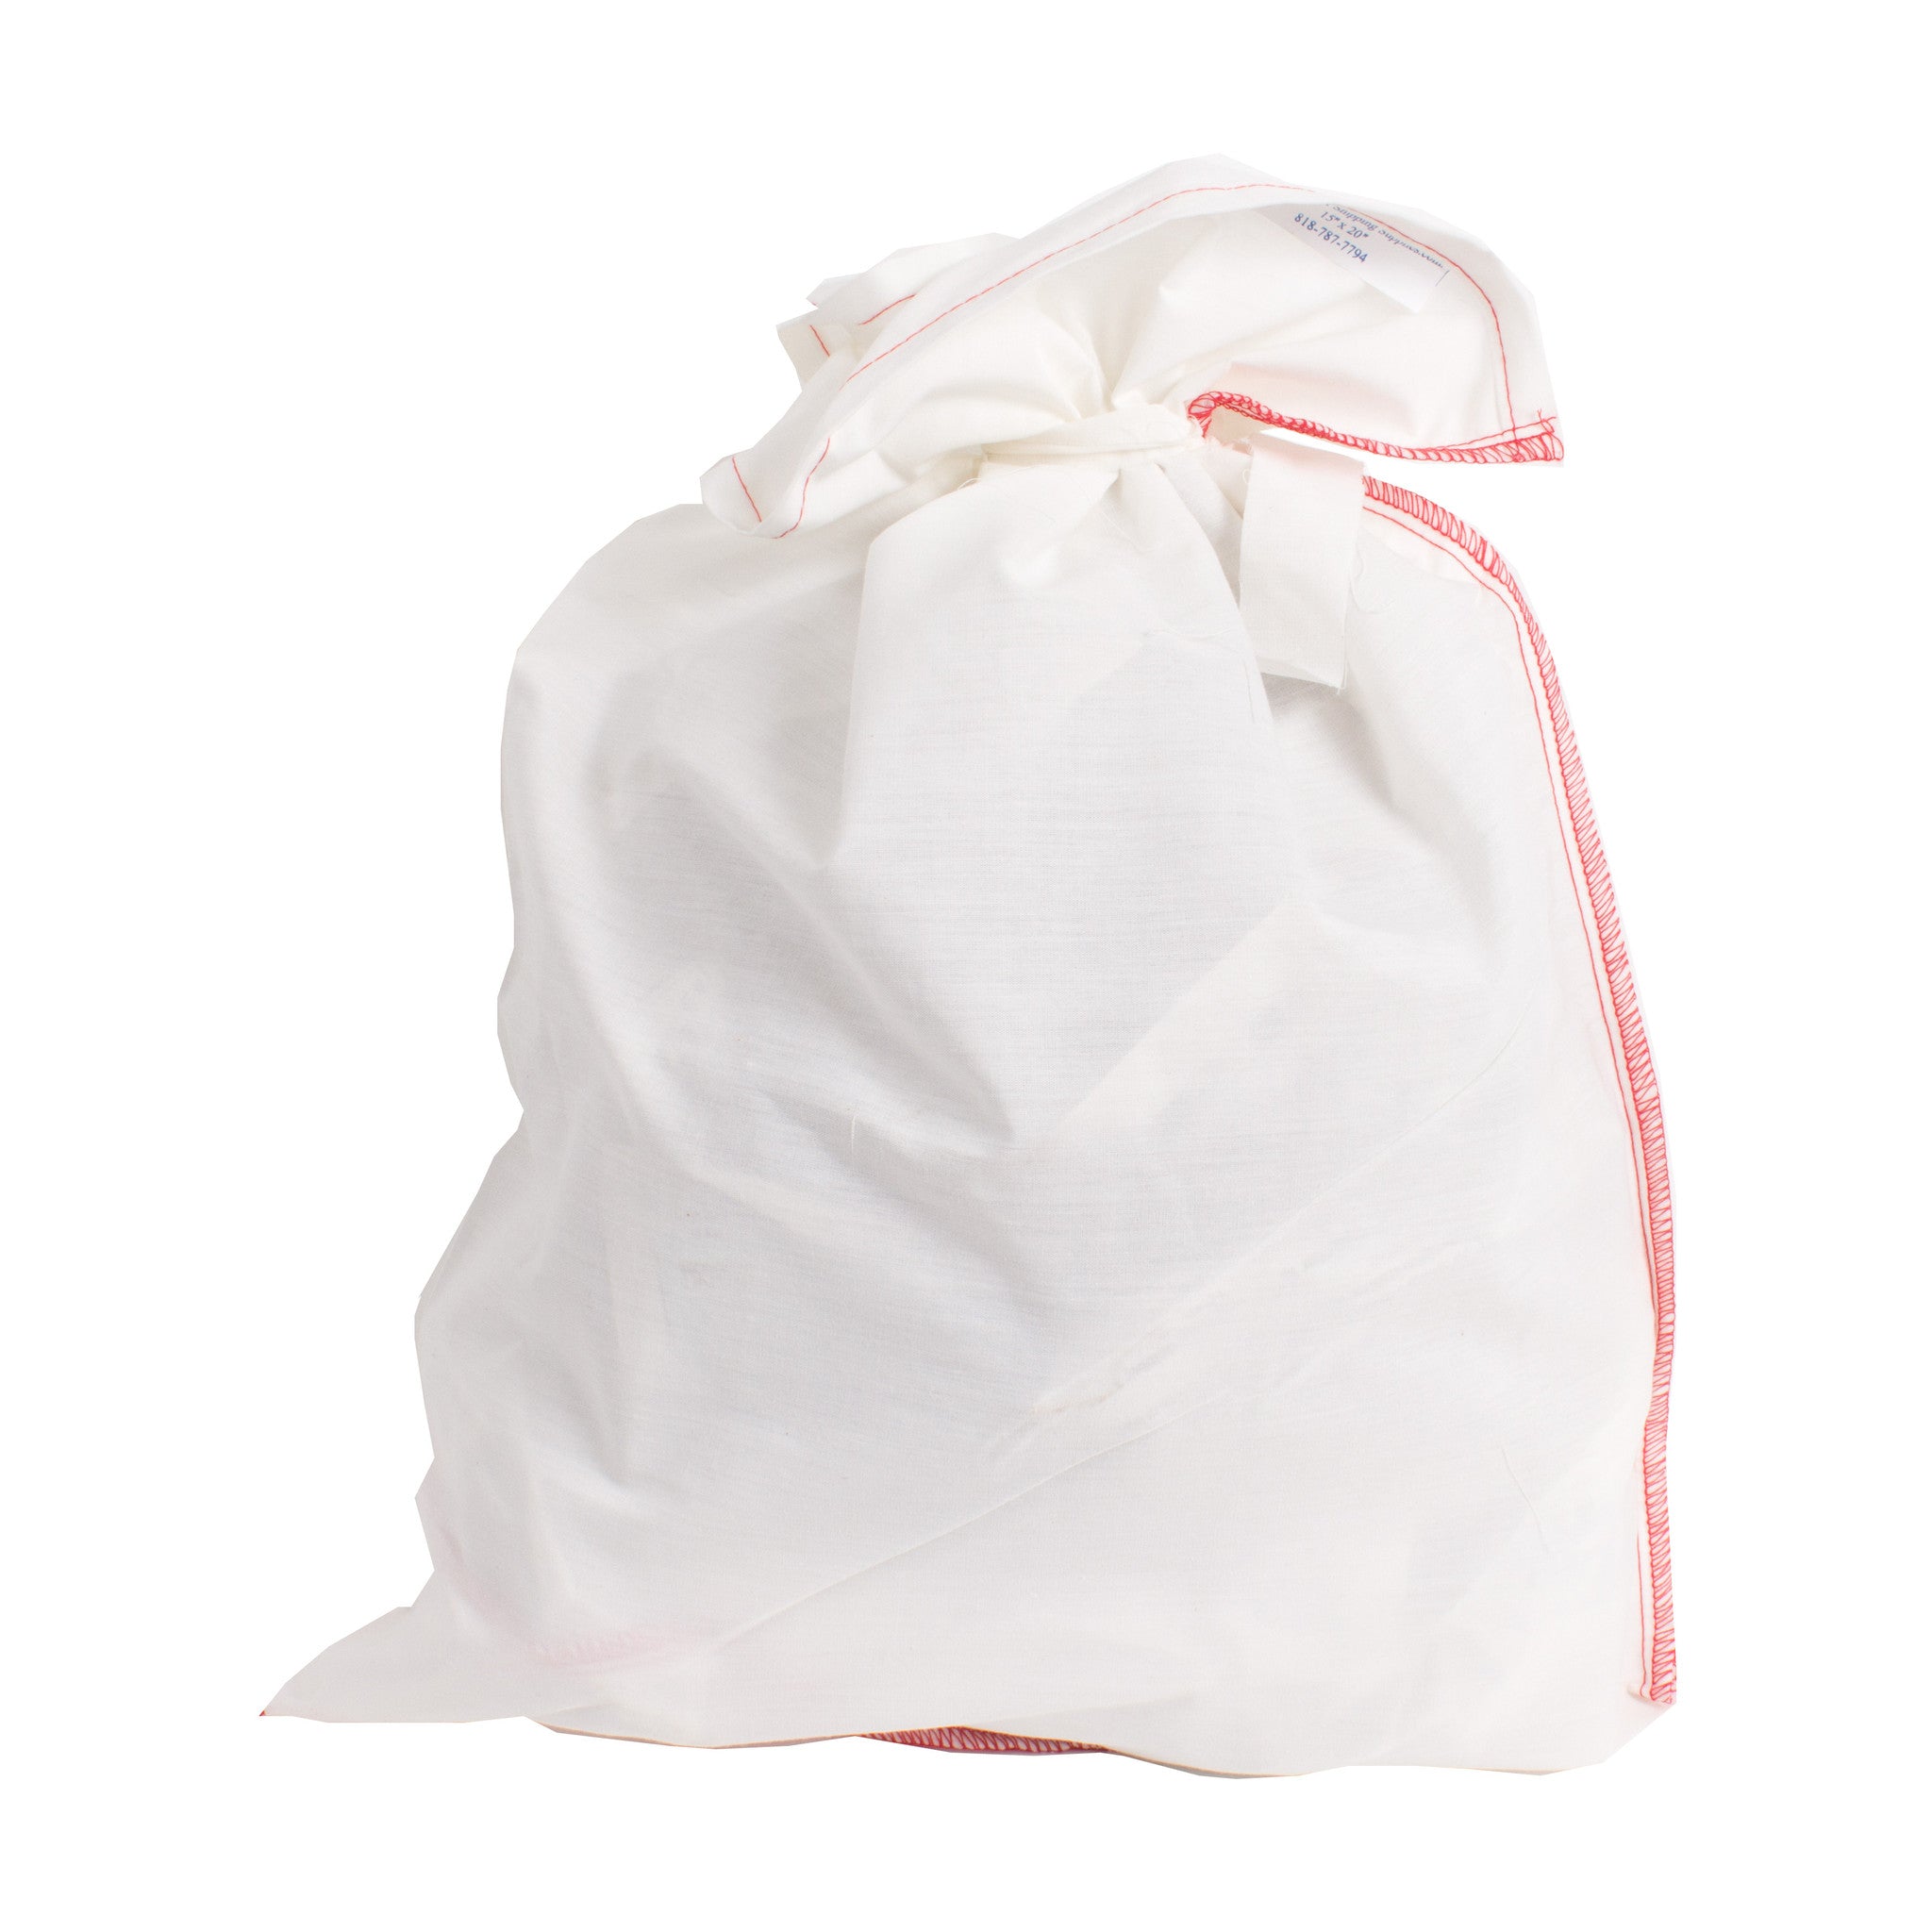 Cloth Bag (14x26")